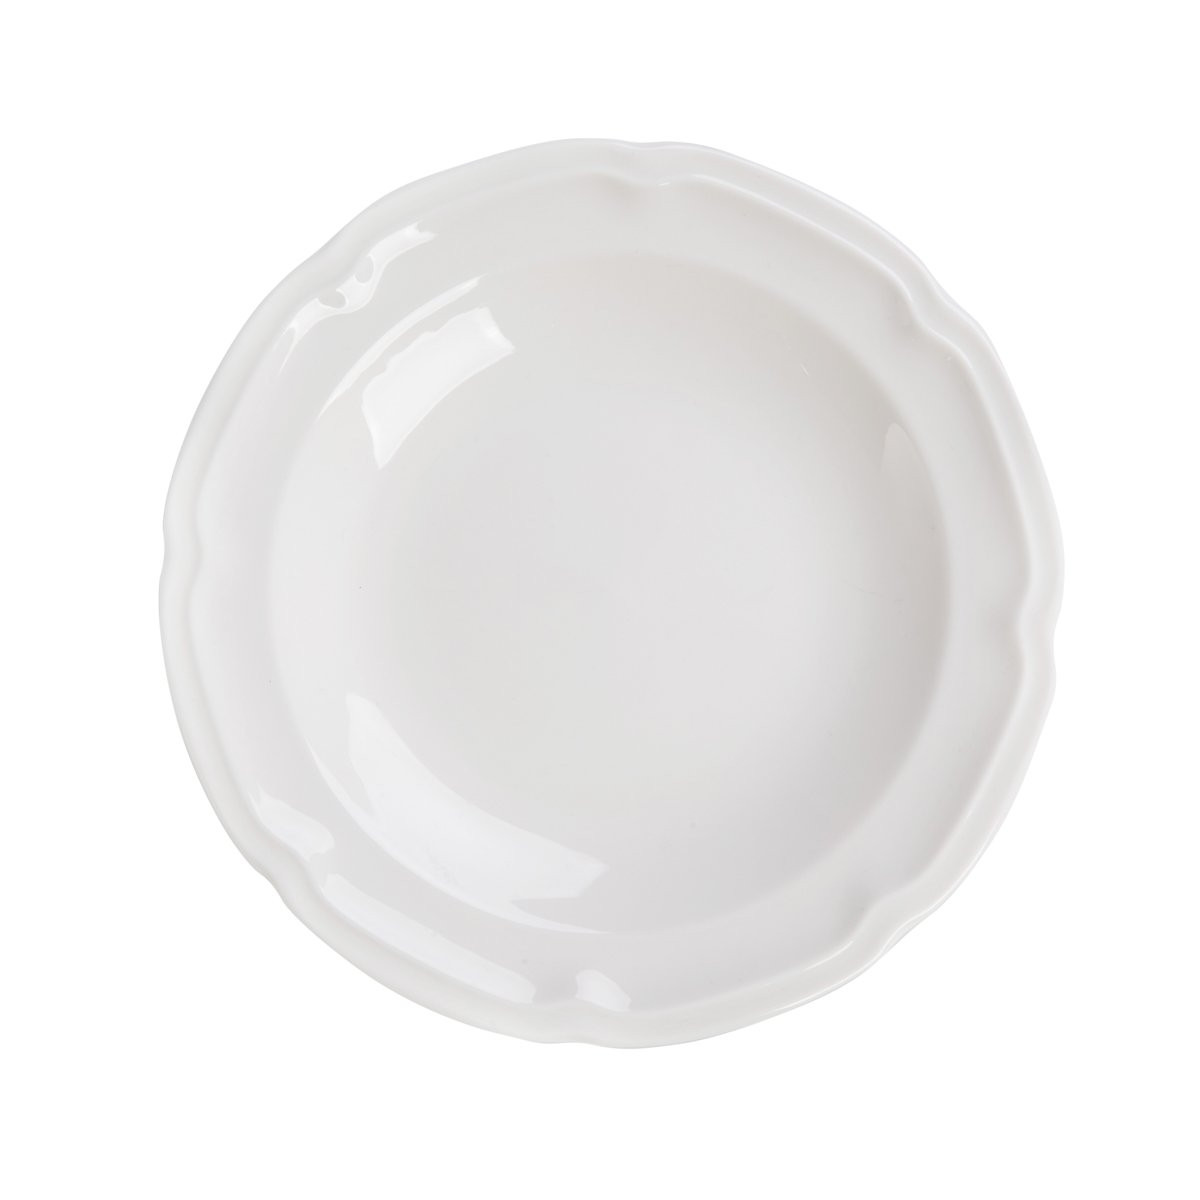 Hlboký tanier JASMINE biely 870656